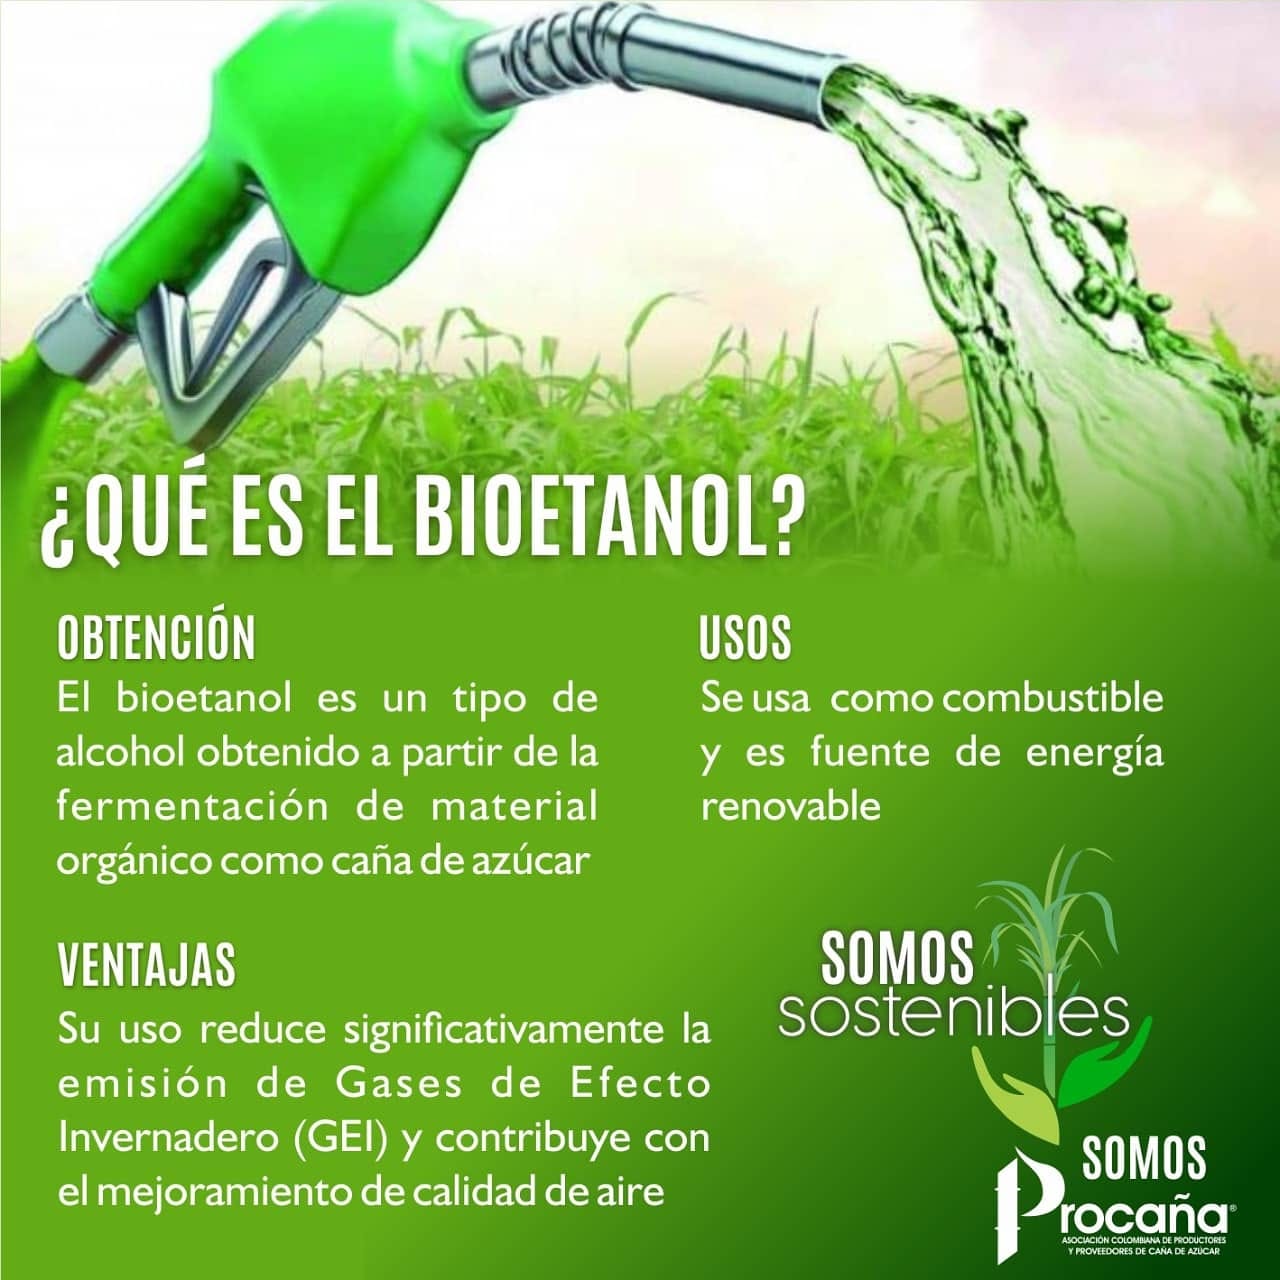 Autorizan aumentos de 19,8% en precio de adquisición de biodiesel y hasta 35,1% en el de bioetanol